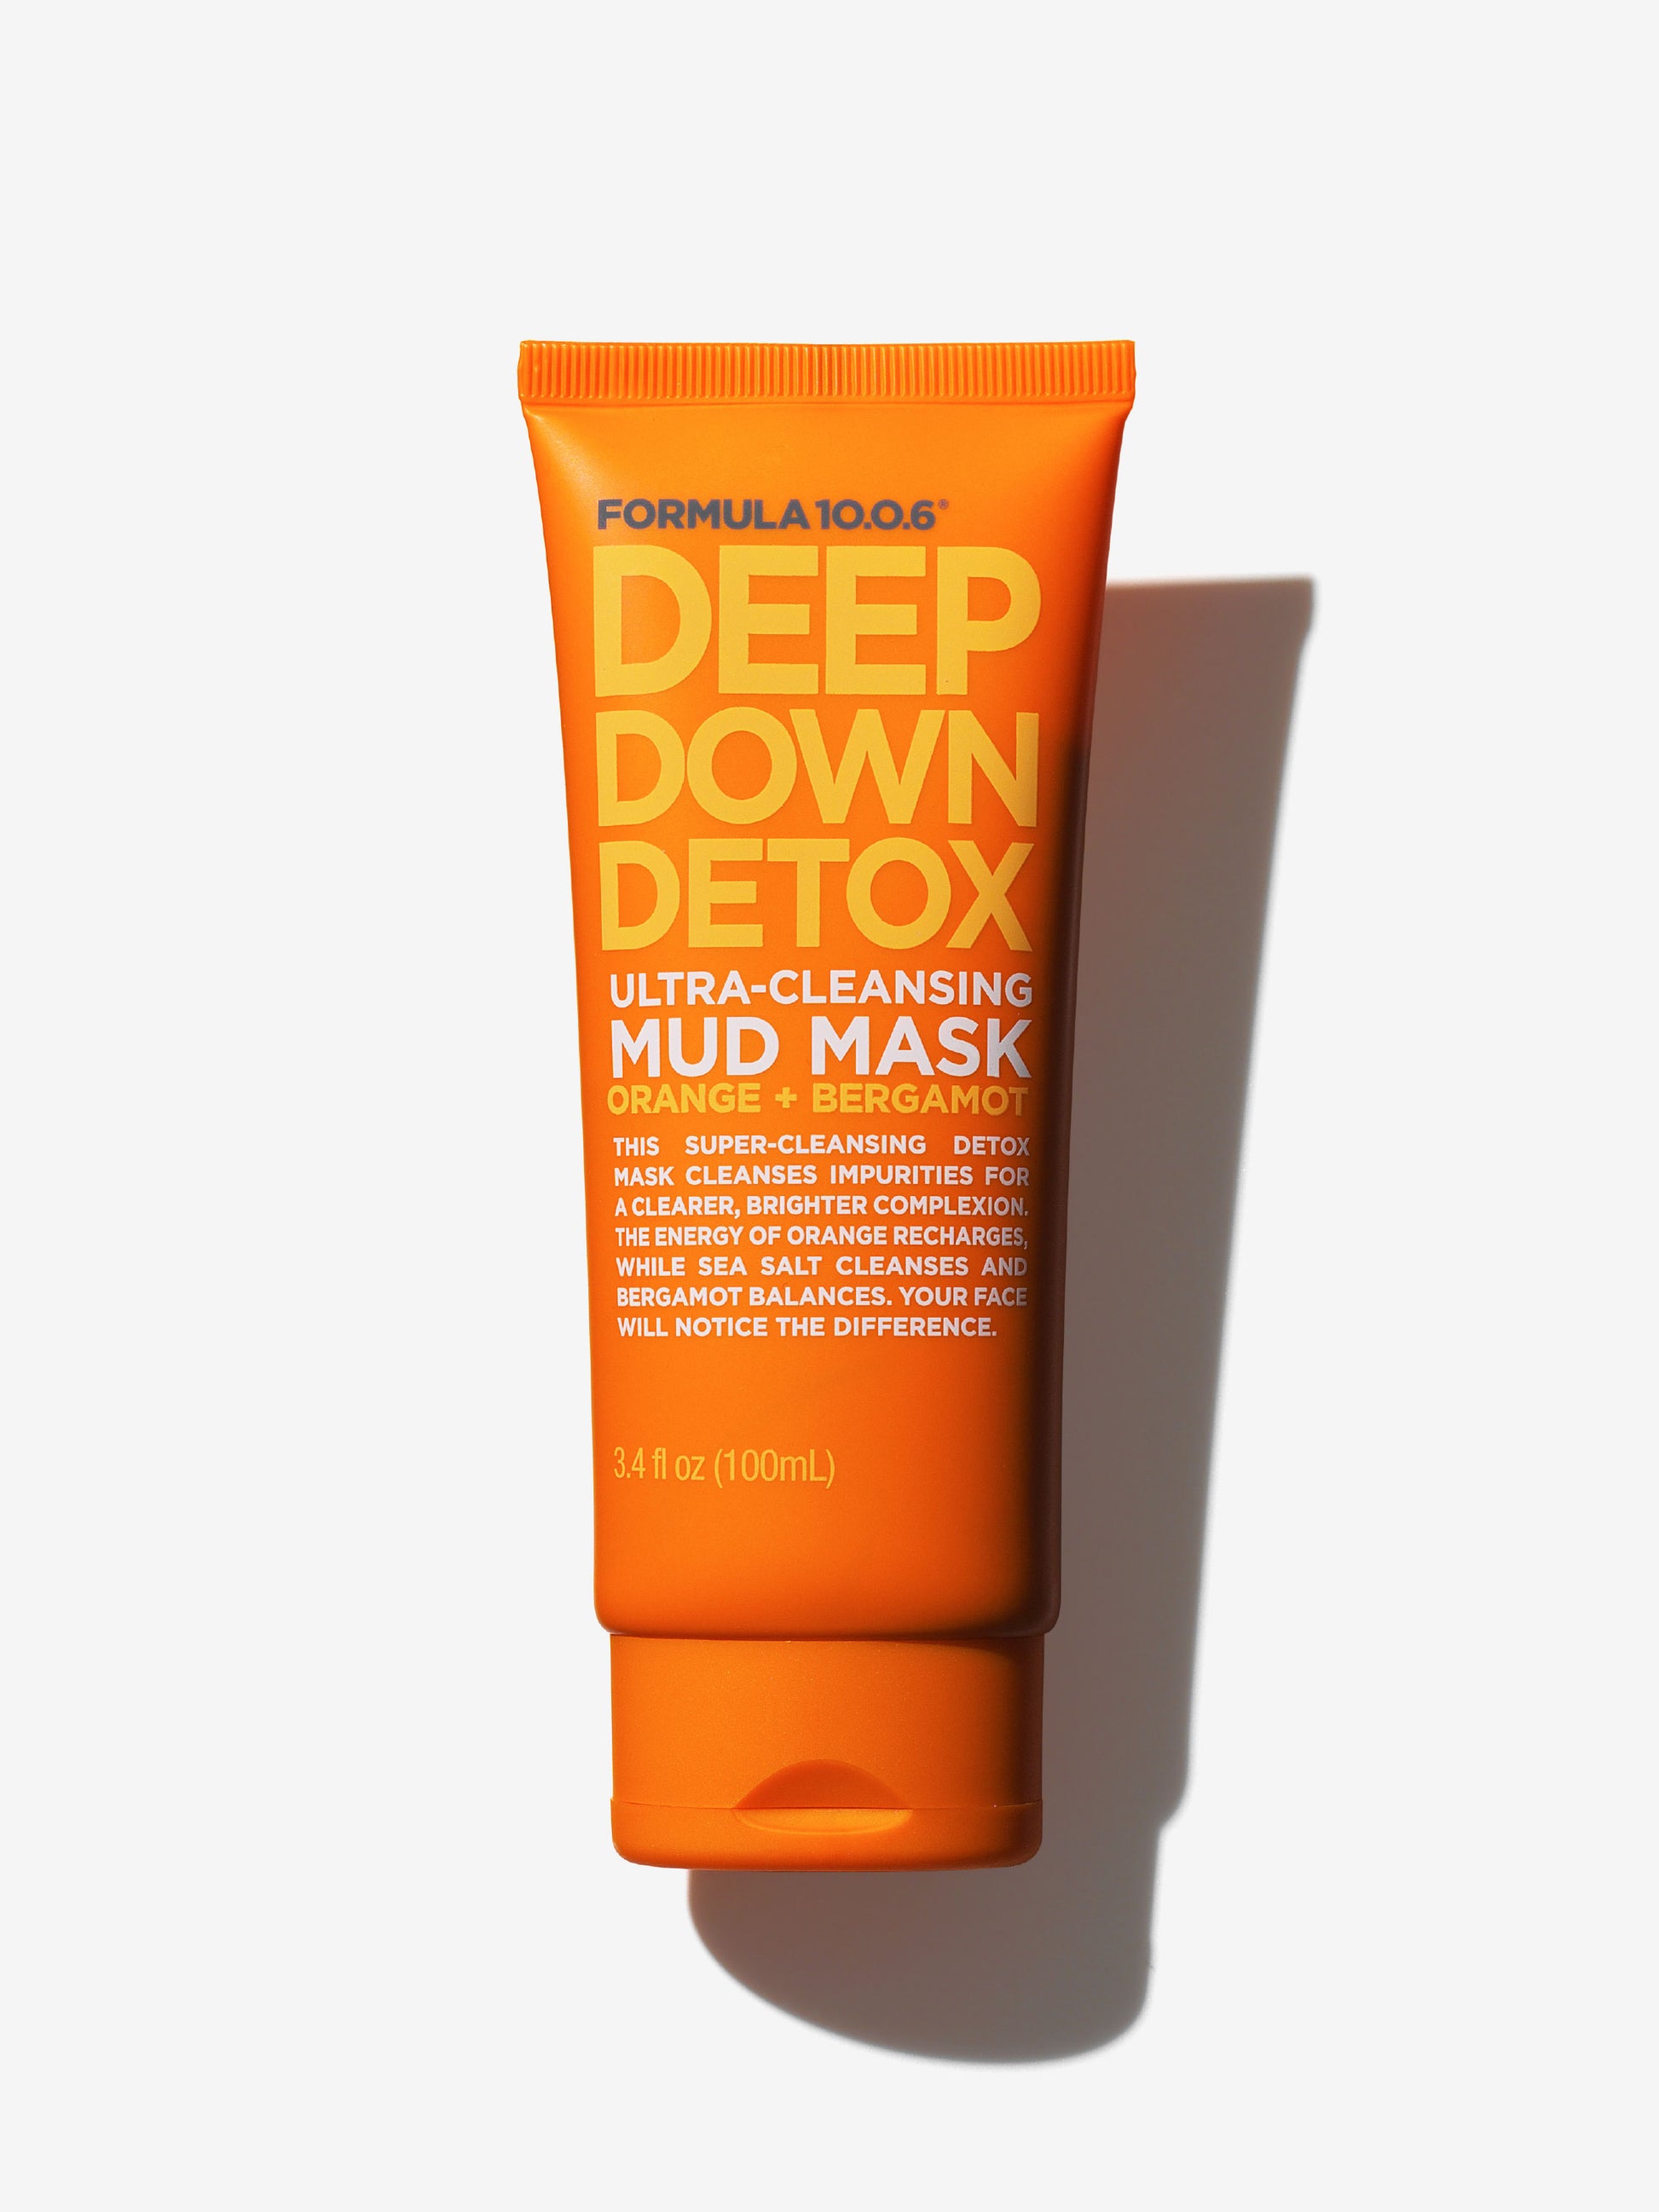 Waxelene Detoxifying Mud Mask, 3 Oz, Pack of 6 